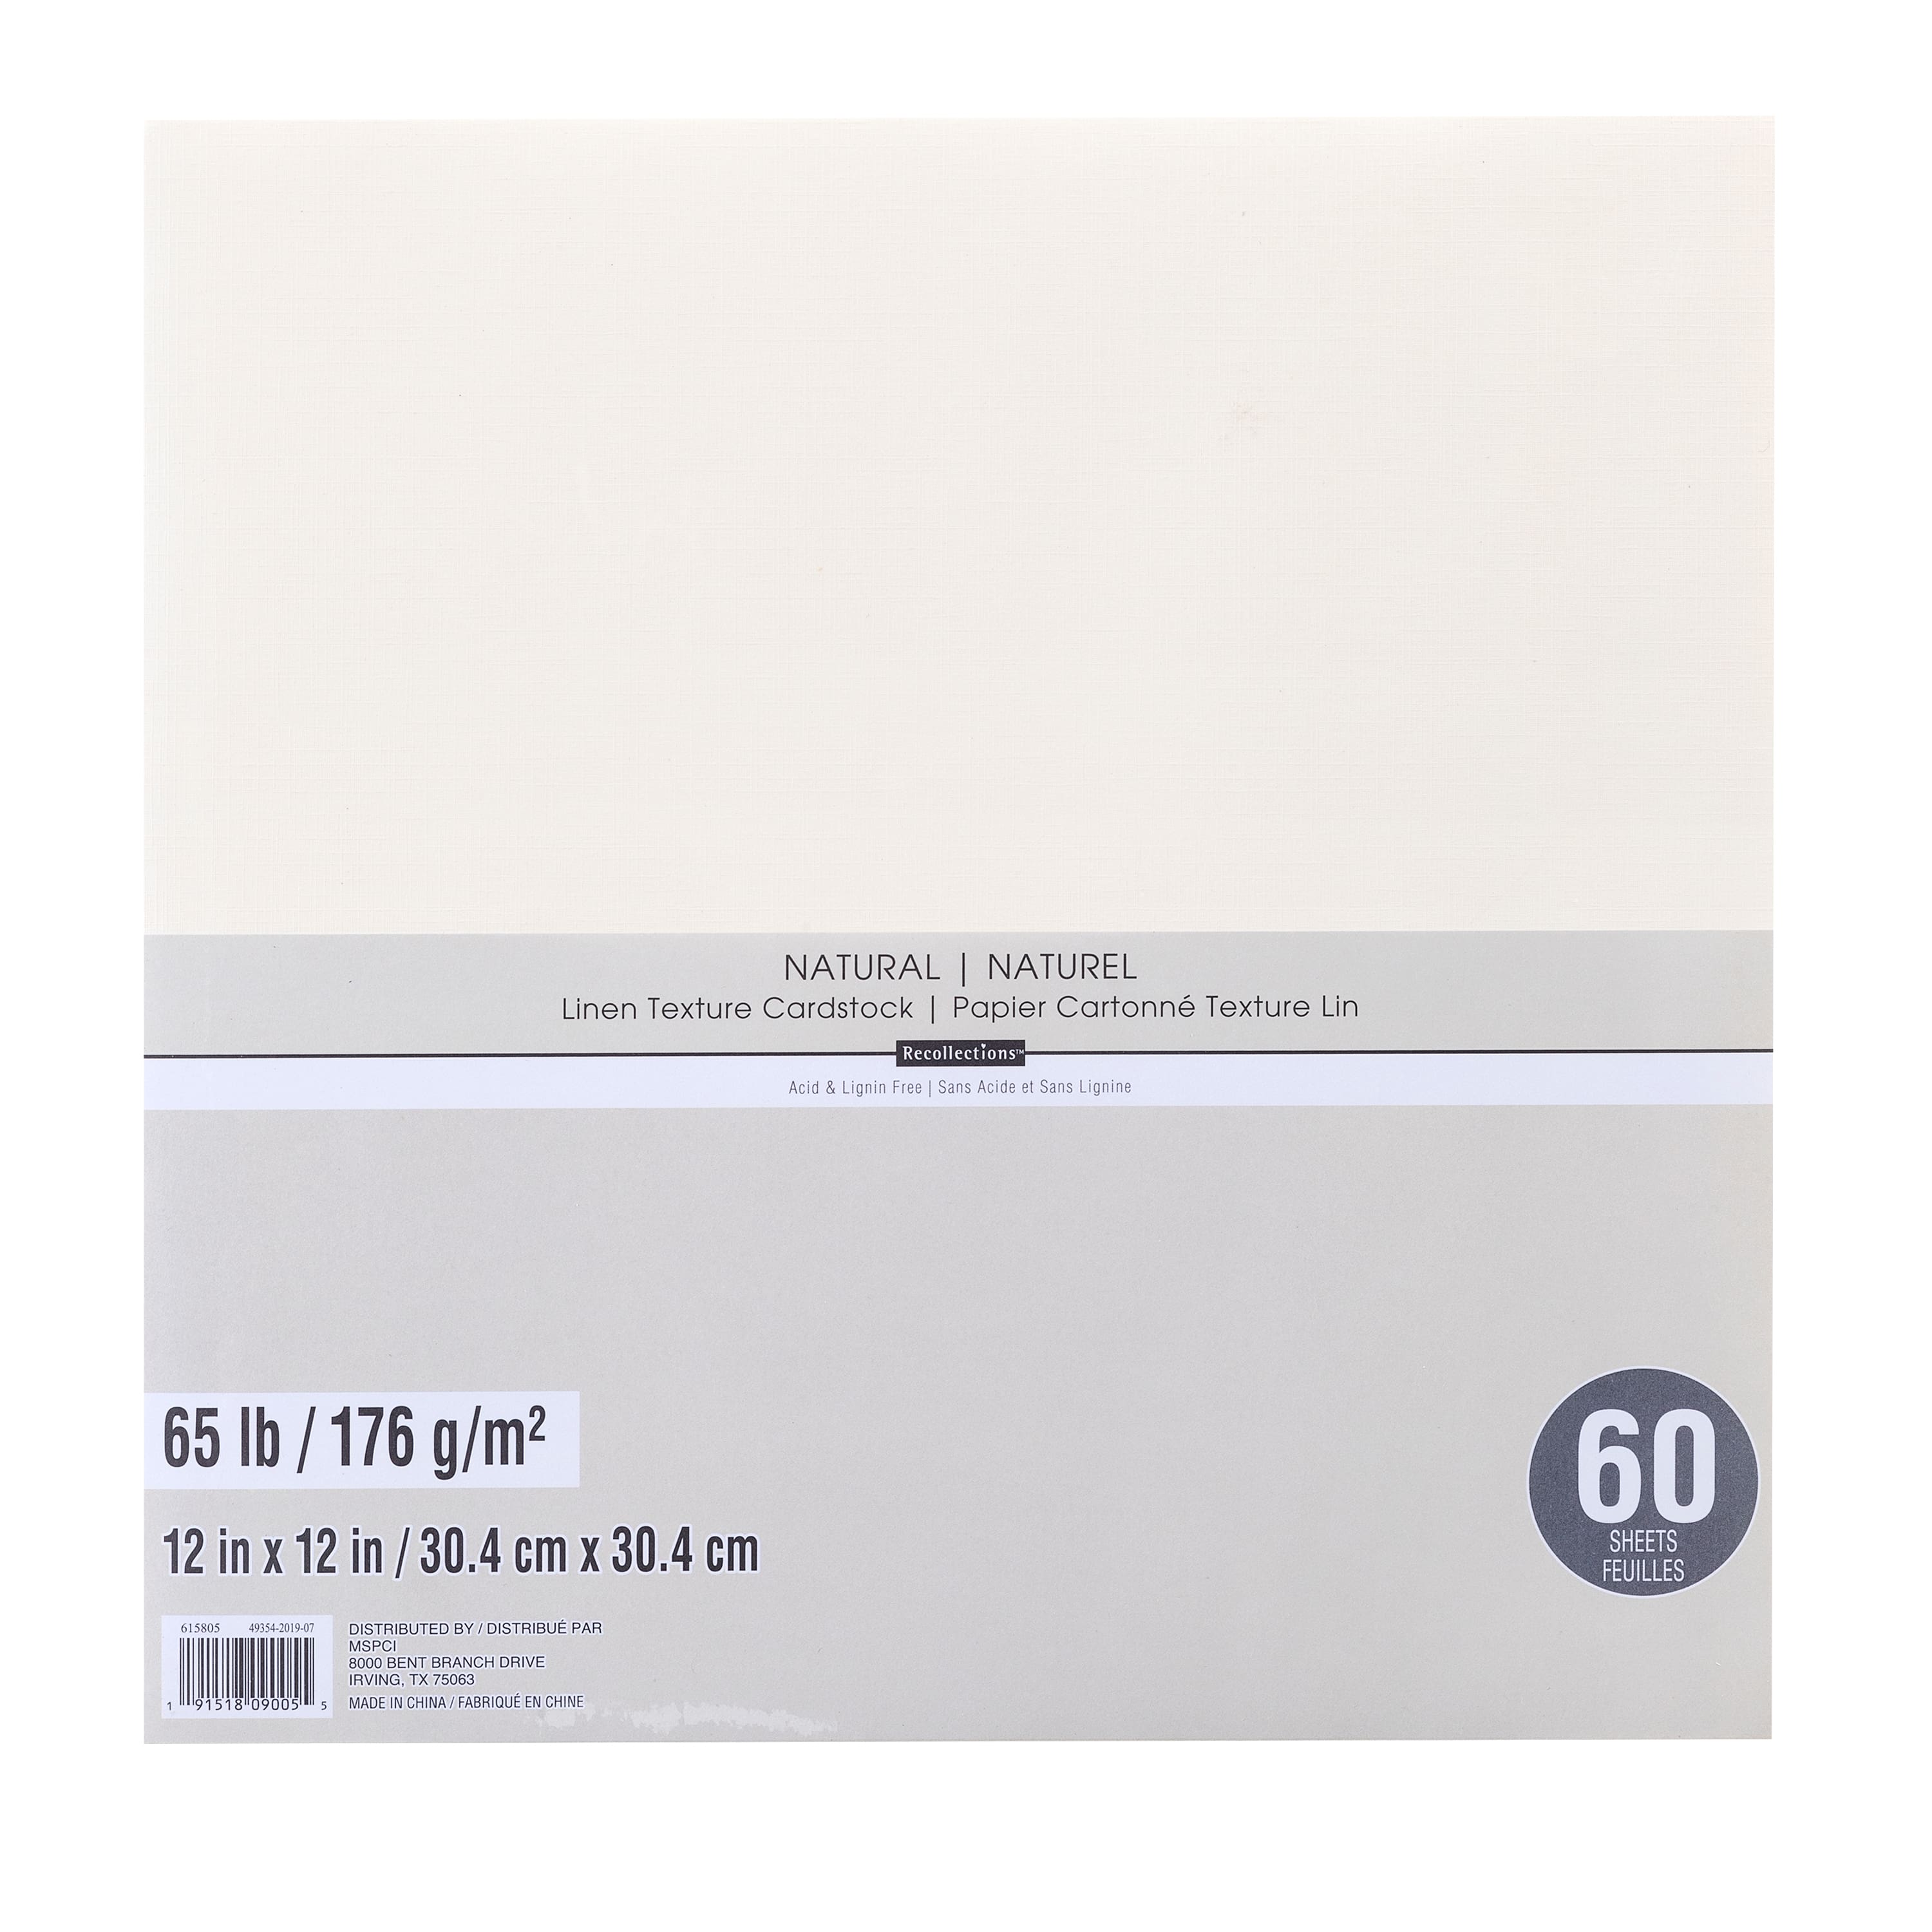  12x12 Cardstock Paper Pack - 110 lb White Cardstock